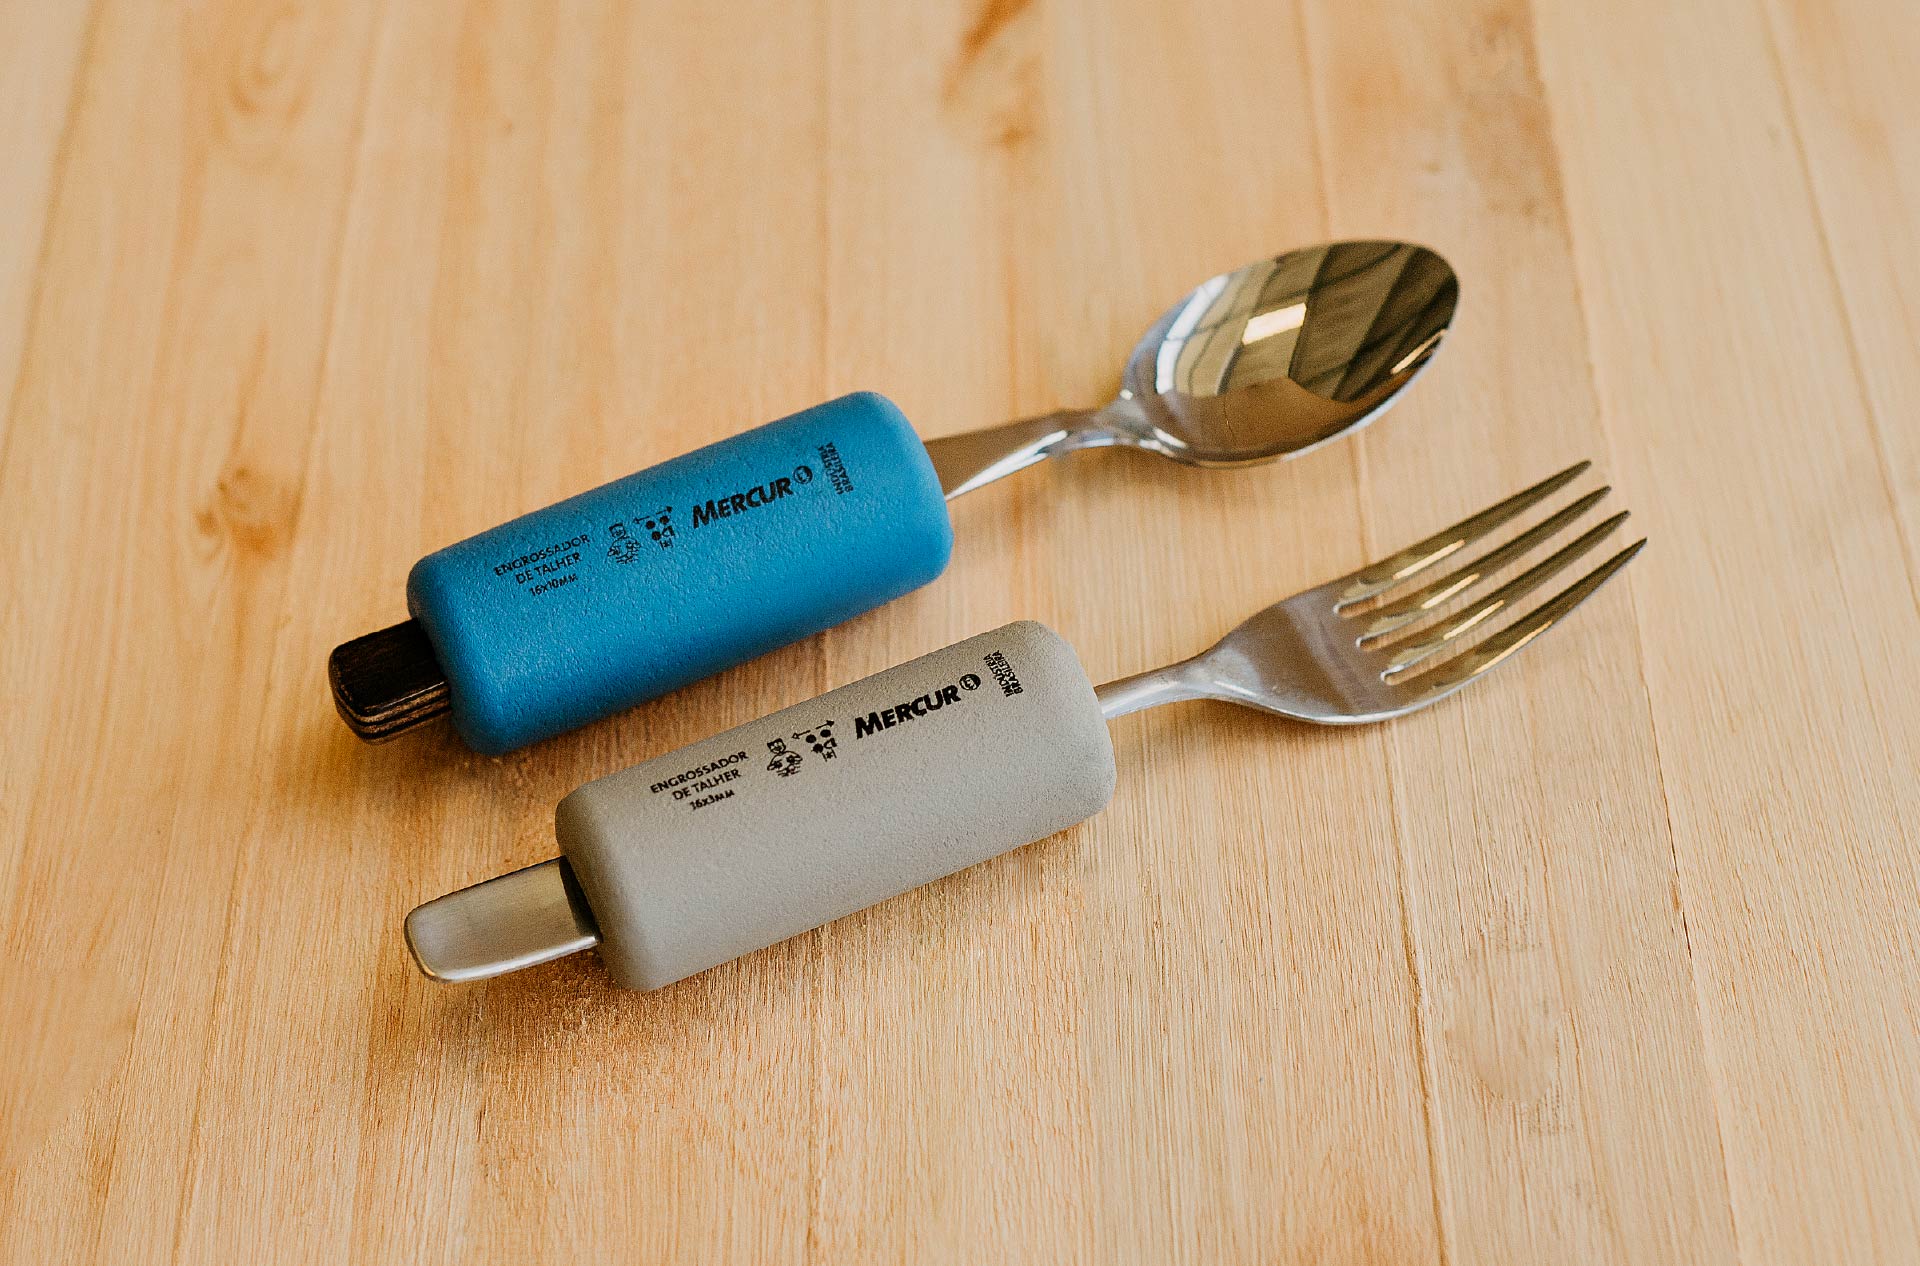 Em uma mesa de madeira, o Engrossador de Talheres azul envolve uma colher com cabo de madeira e o Engrossador de Talheres cinza envolve um garfo com cabo de metal.